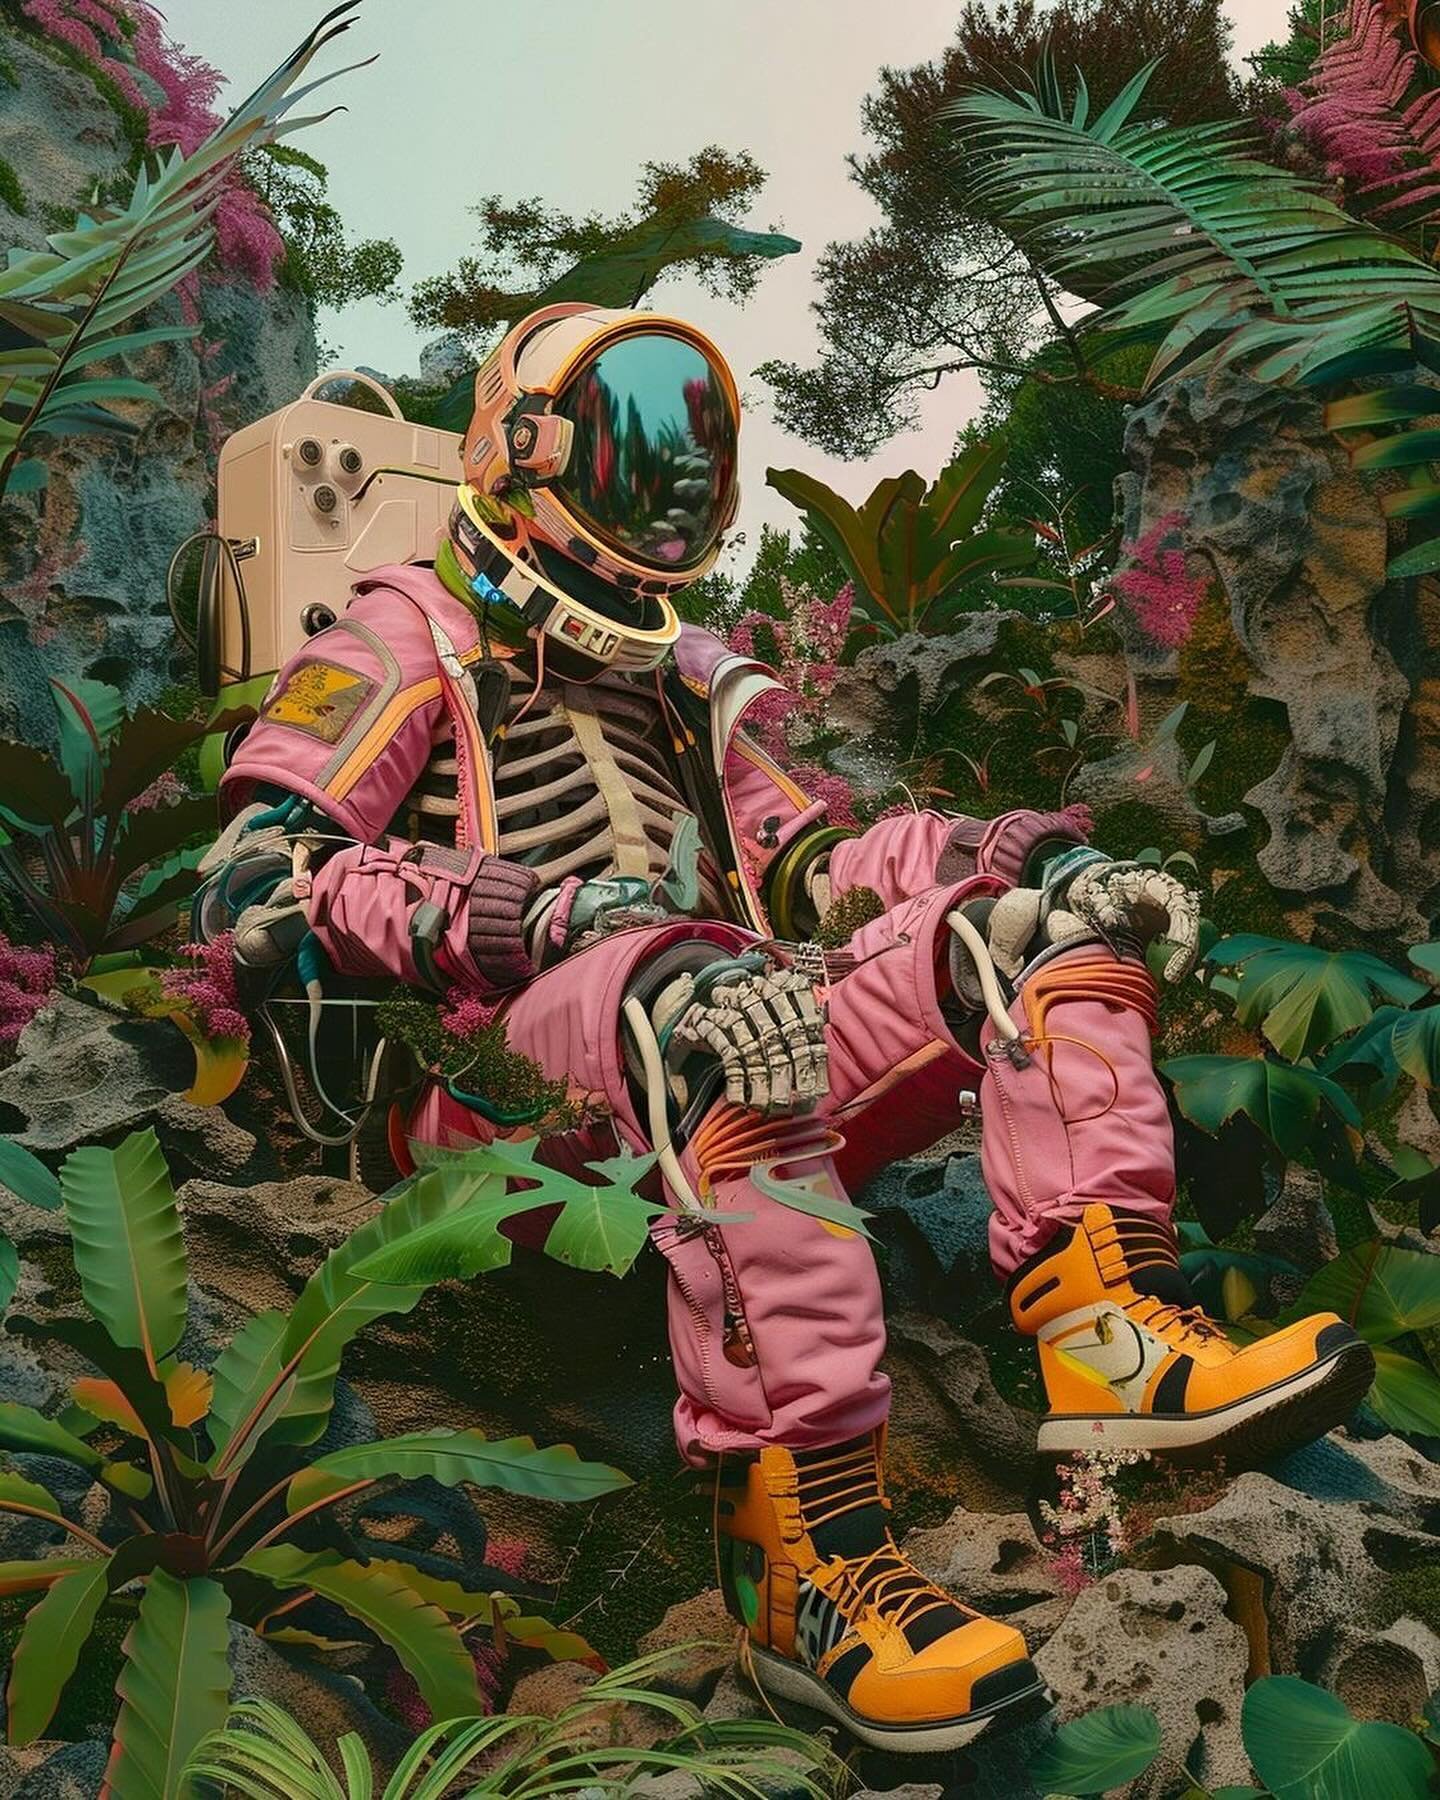 Dead Astronauts ( in pajamas )

#kenkelleher #artadvisor #livingwithart #modernartists #biennale #inflatable #inflatables #inflatablesculpture #modernsculpture #artreview #escultura #sculpture #esculpture #artnow #contemporarysculpture #sculptor #art